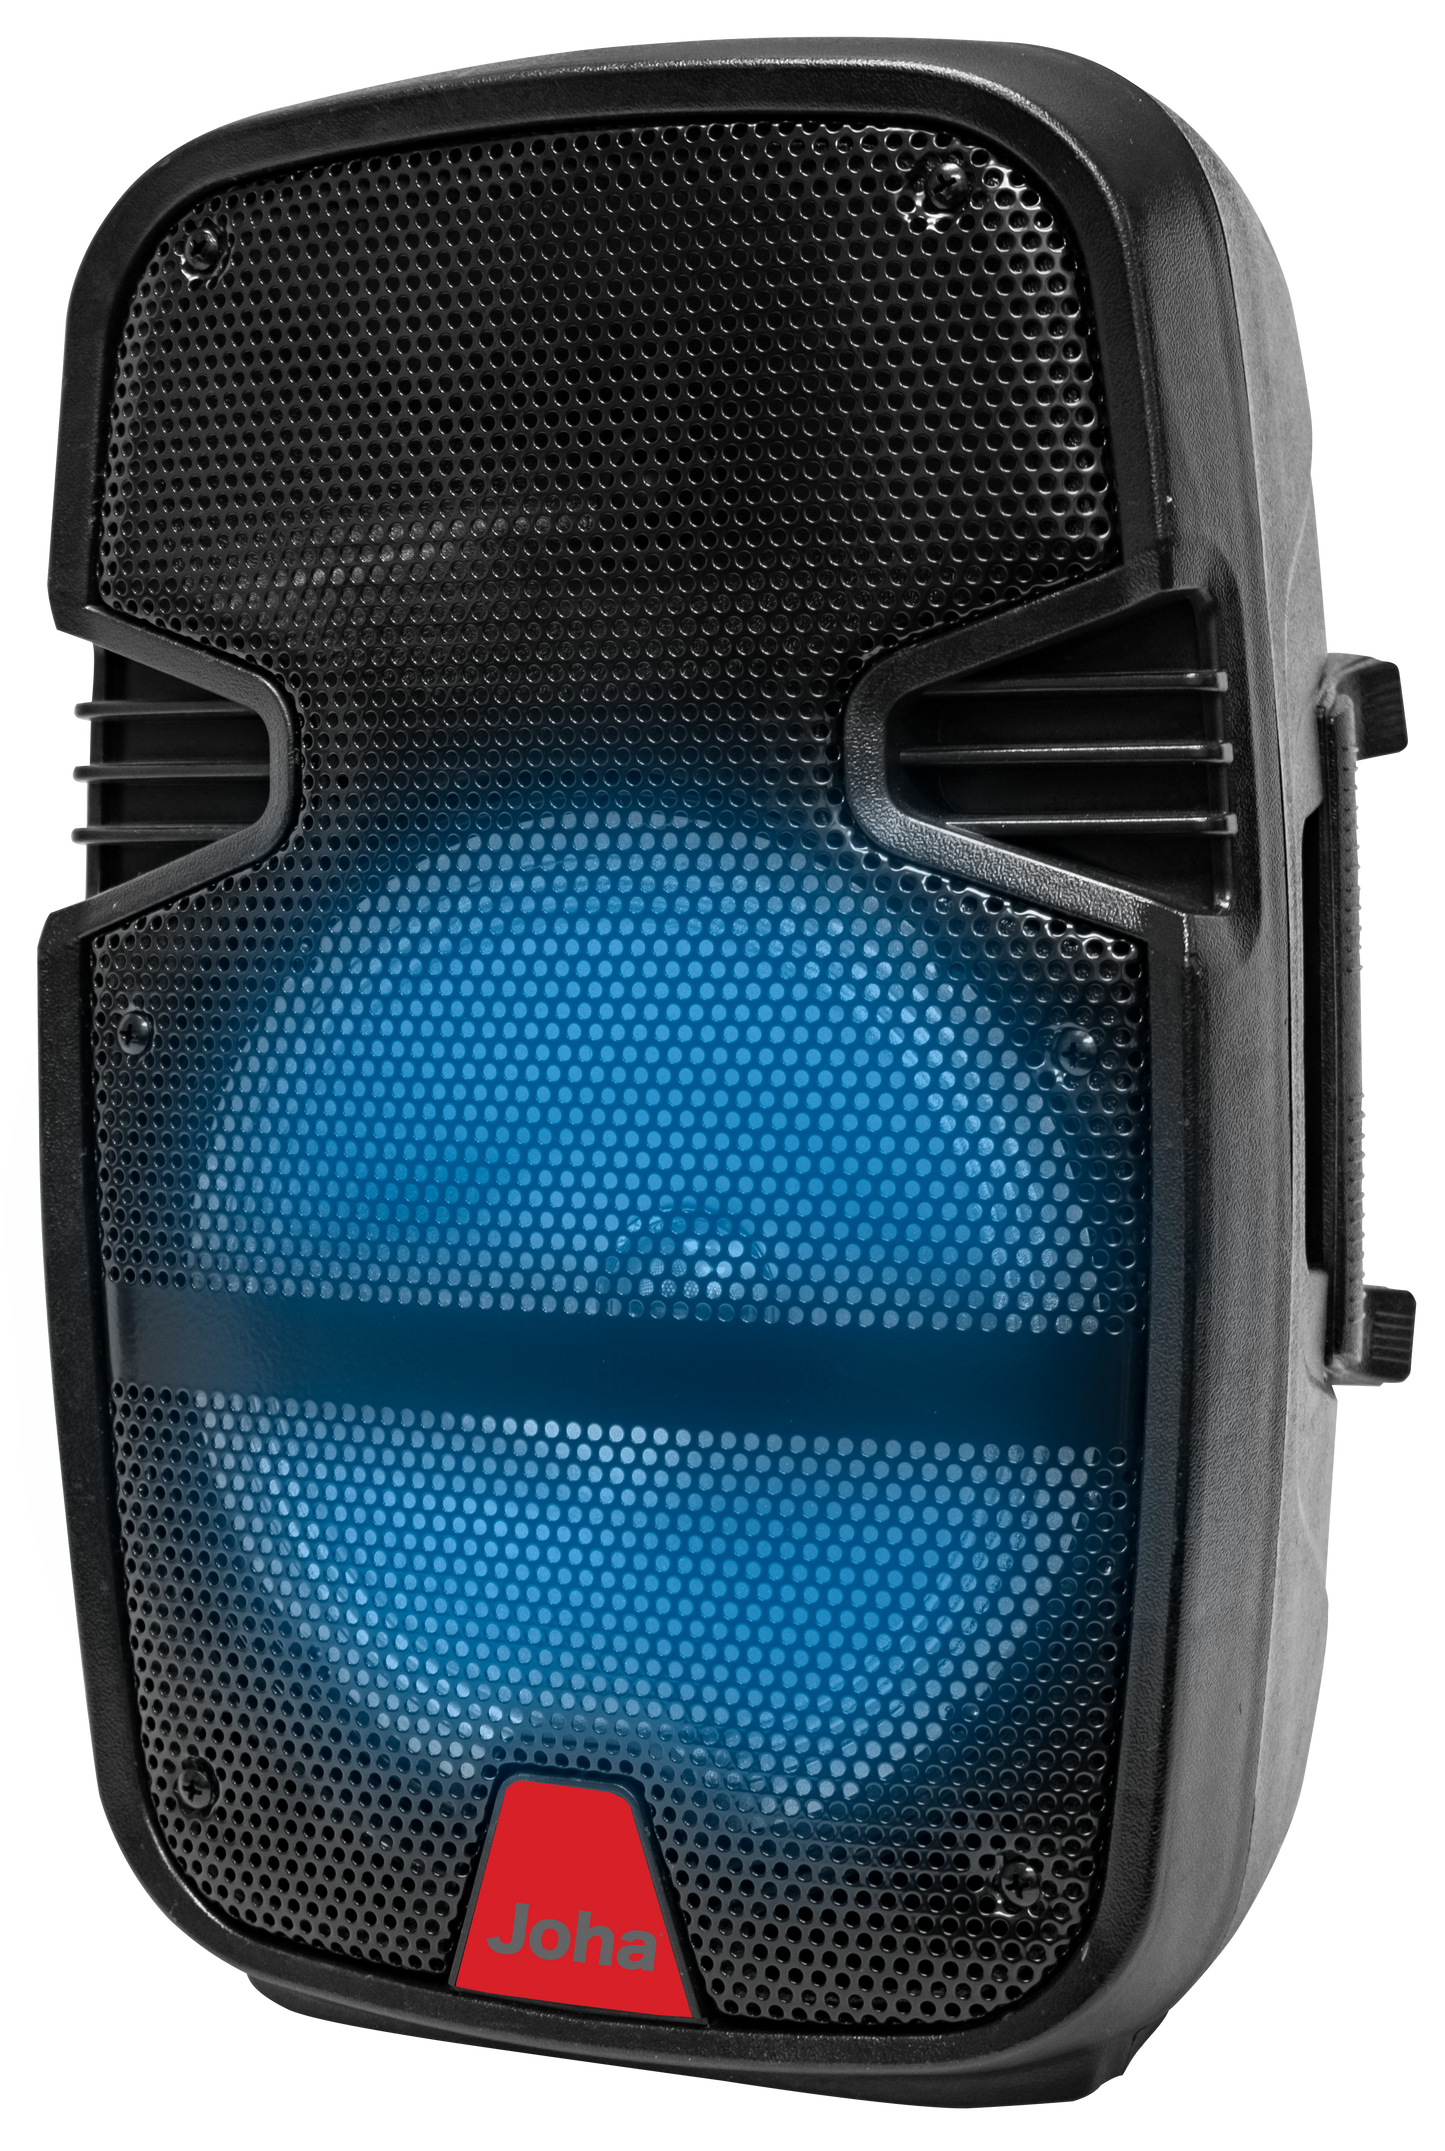 Joha Wireless Speaker (JDS-850) [7500 PMPO]